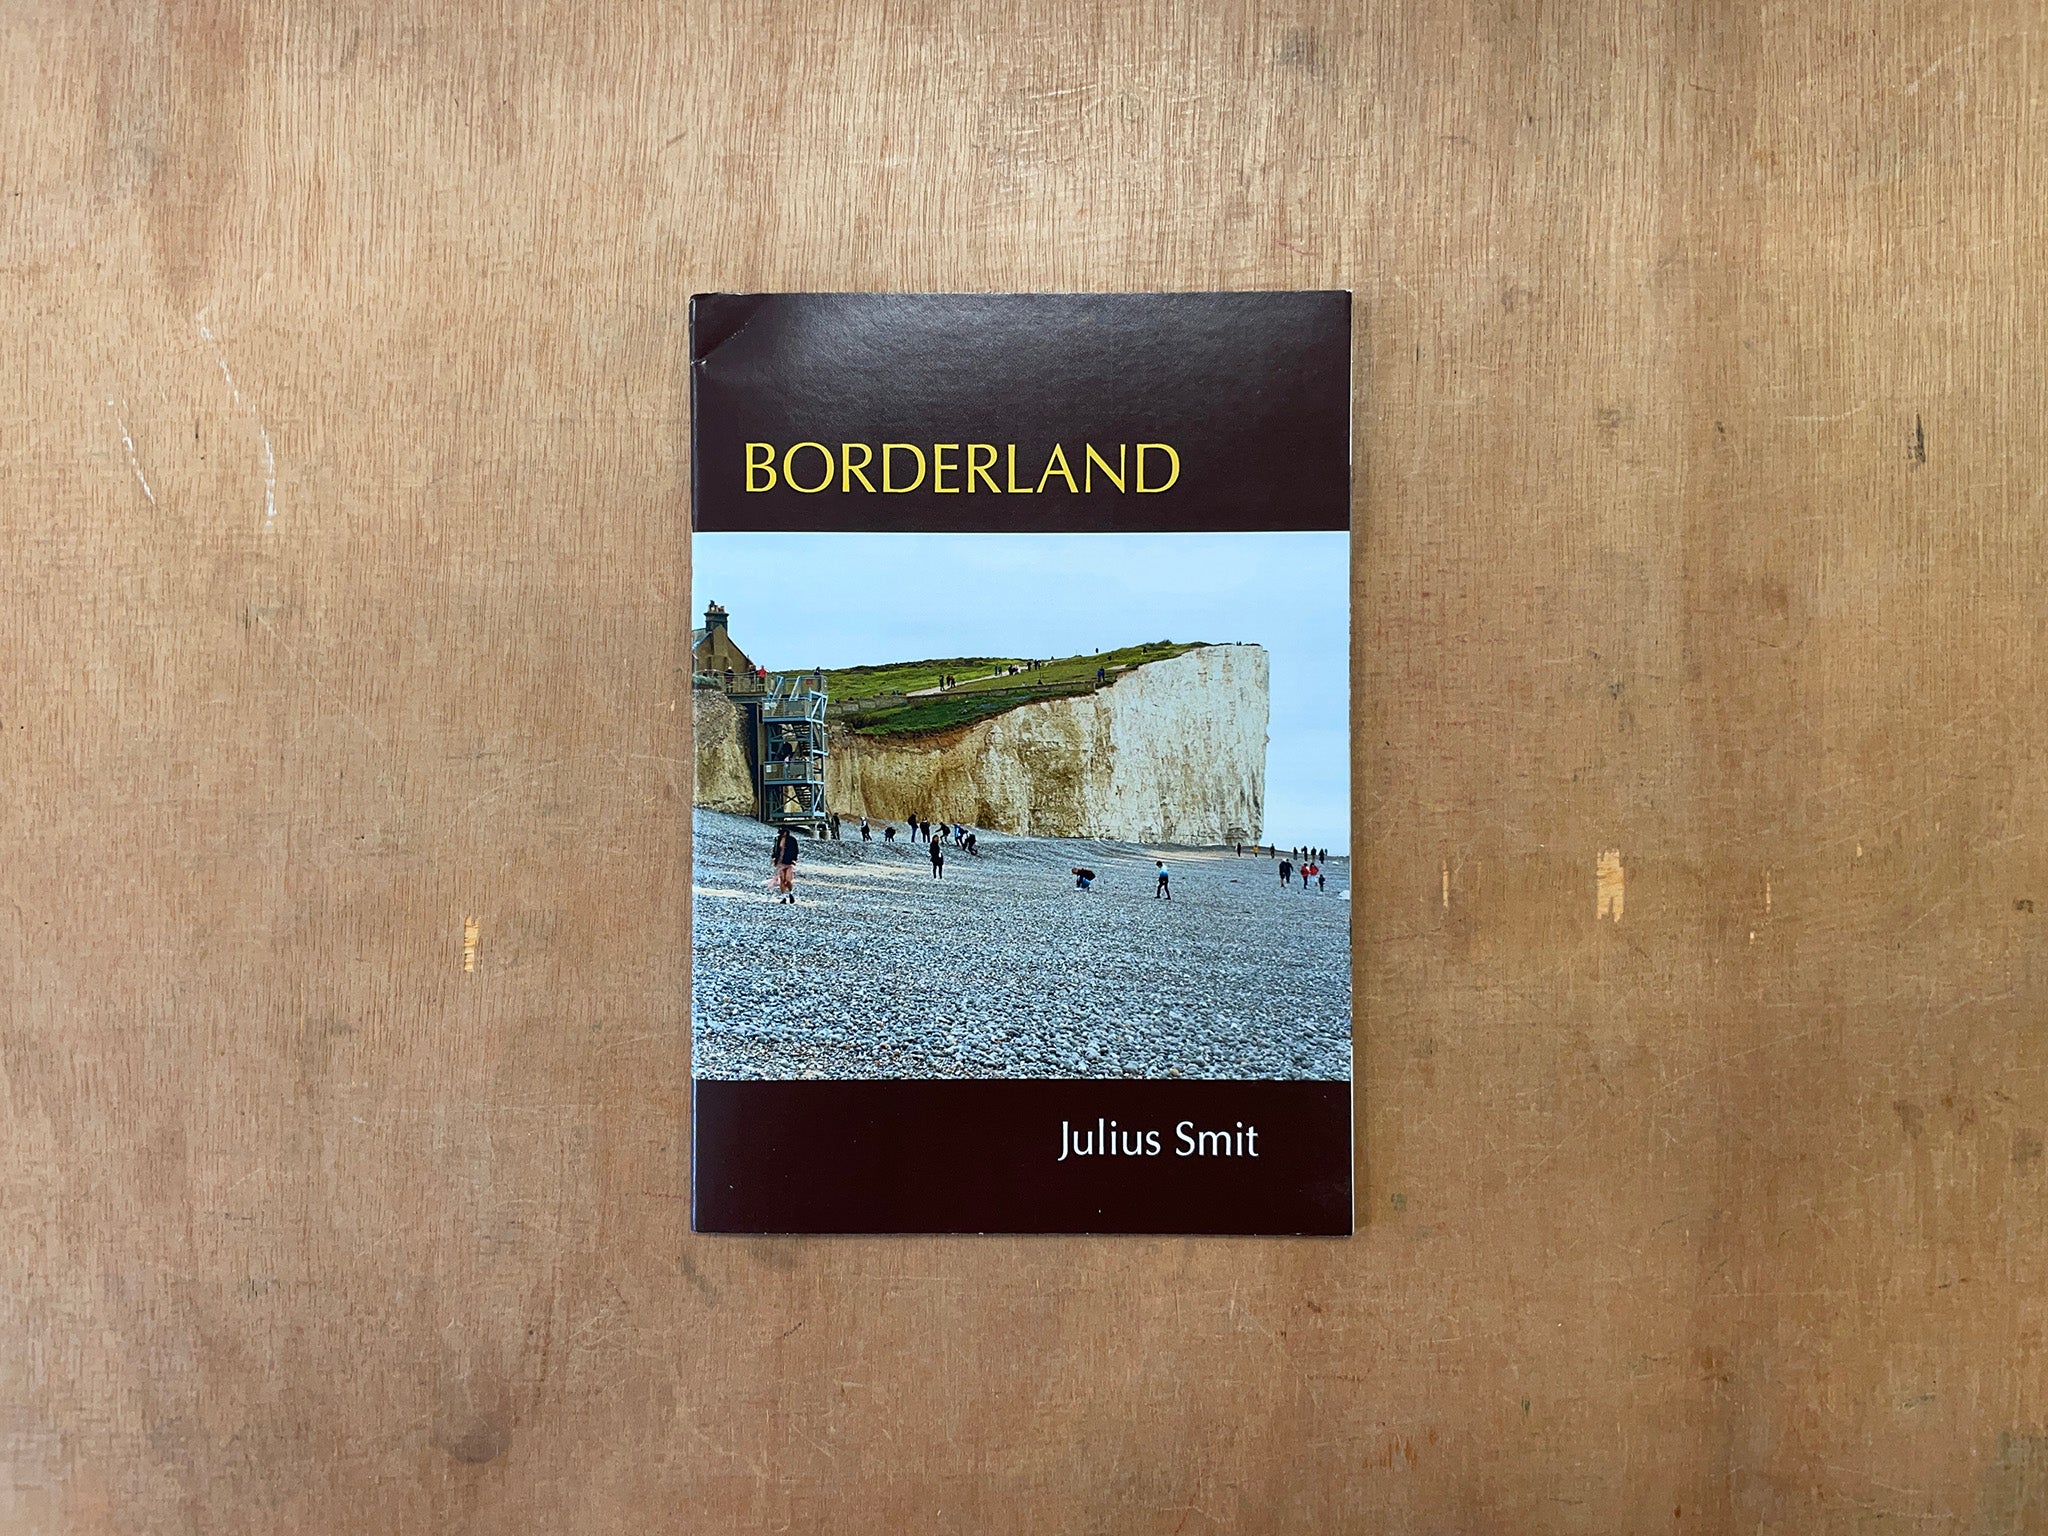 BORDERLAND by Julius Smit